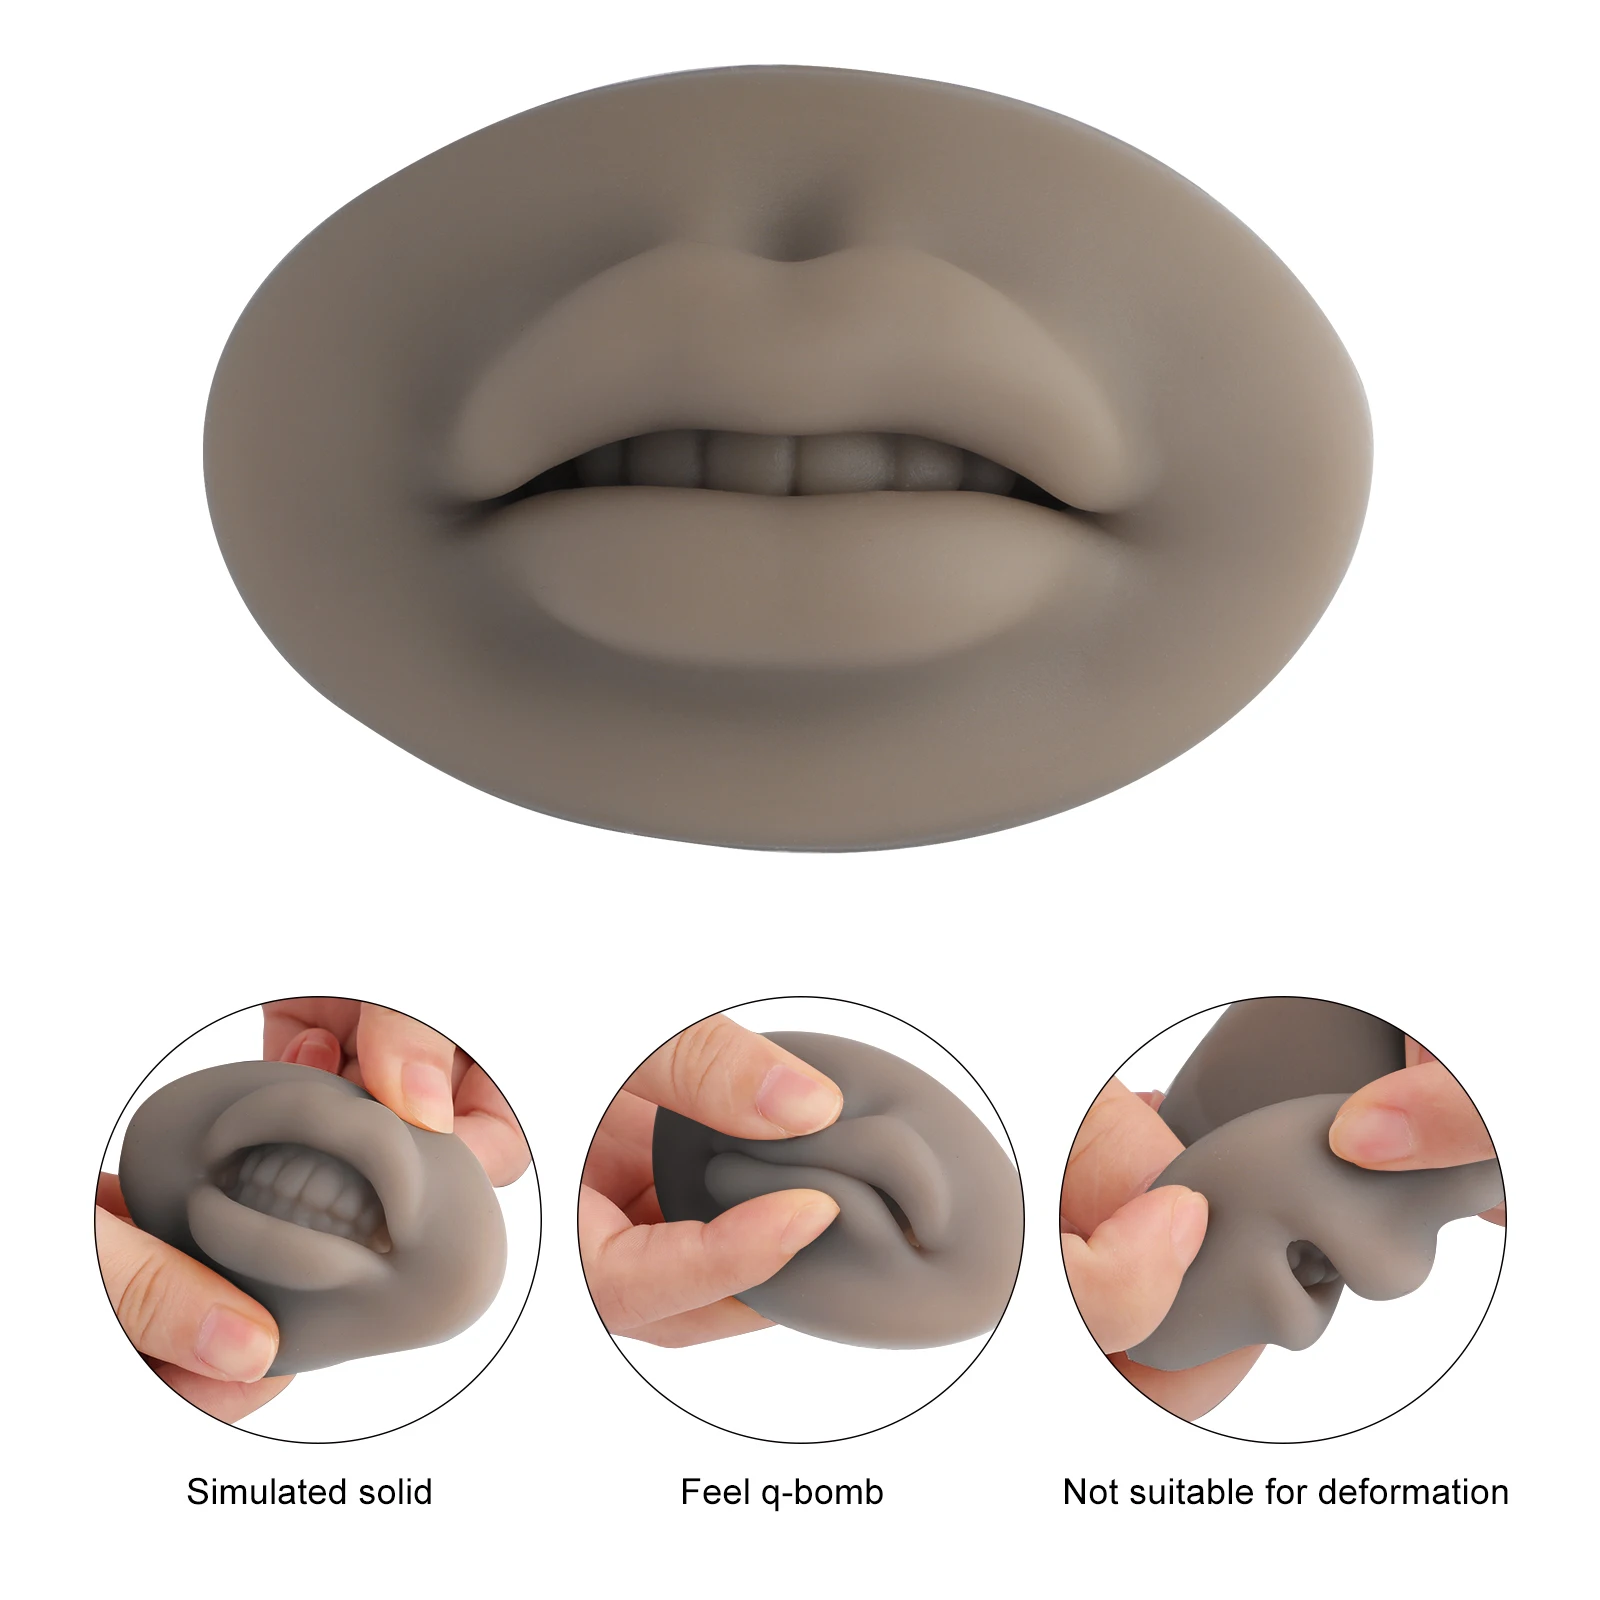 3D Силиконовая тренировочная форма для губ с открытым ртом, тату-кожа, 3D Губы, микроблейдинг, тренировка, кожа, латекс, кожа для перманентного макияжа